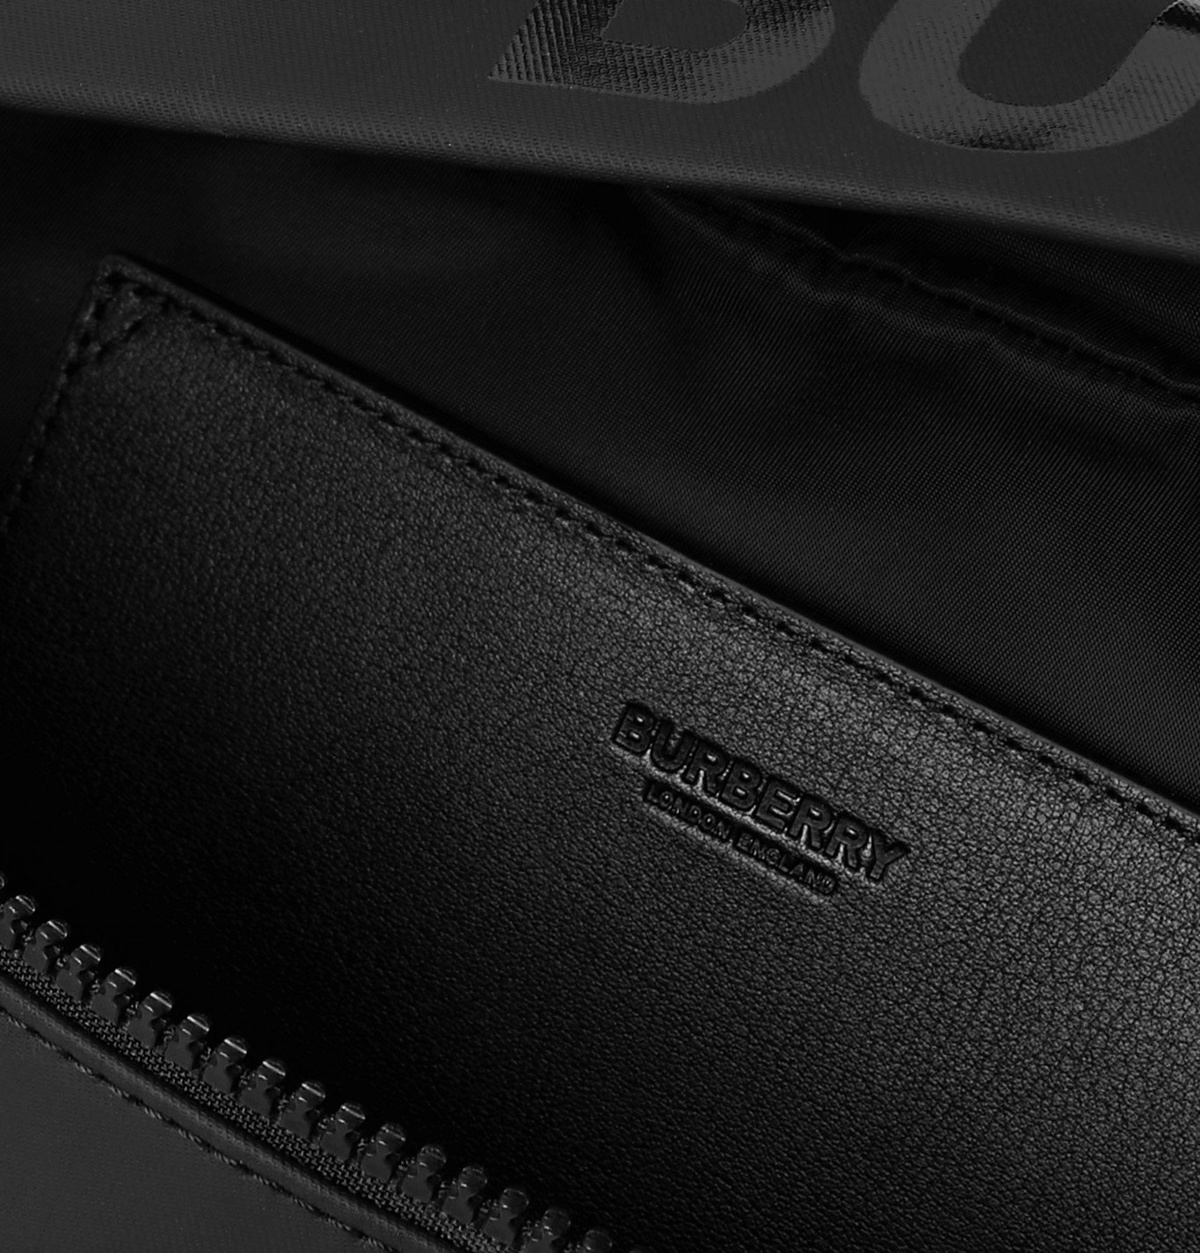 Burberry 8028956 ECONYL Waist bag Black